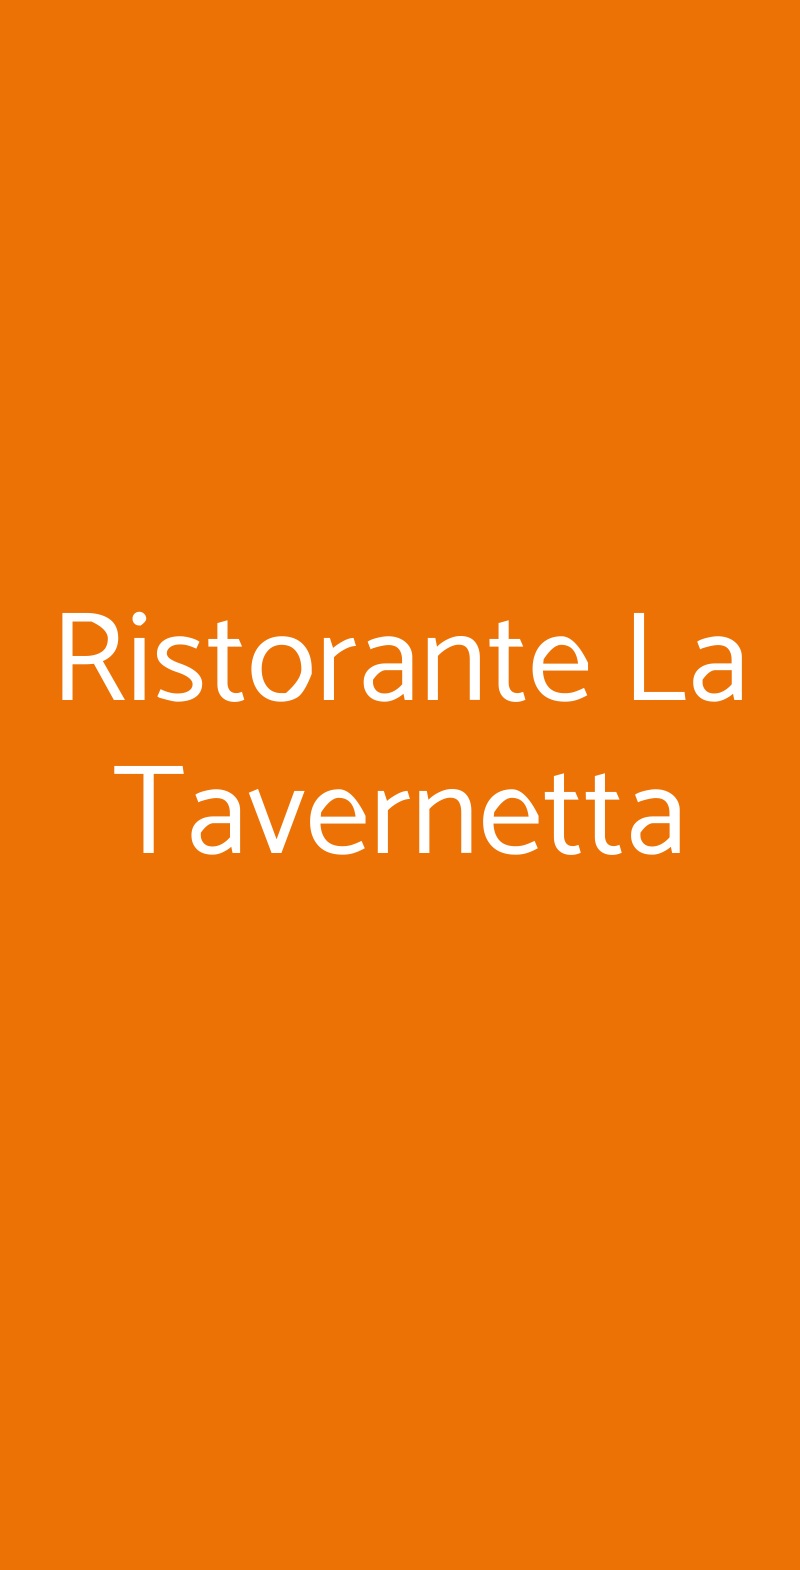 Ristorante La Tavernetta Eraclea menù 1 pagina